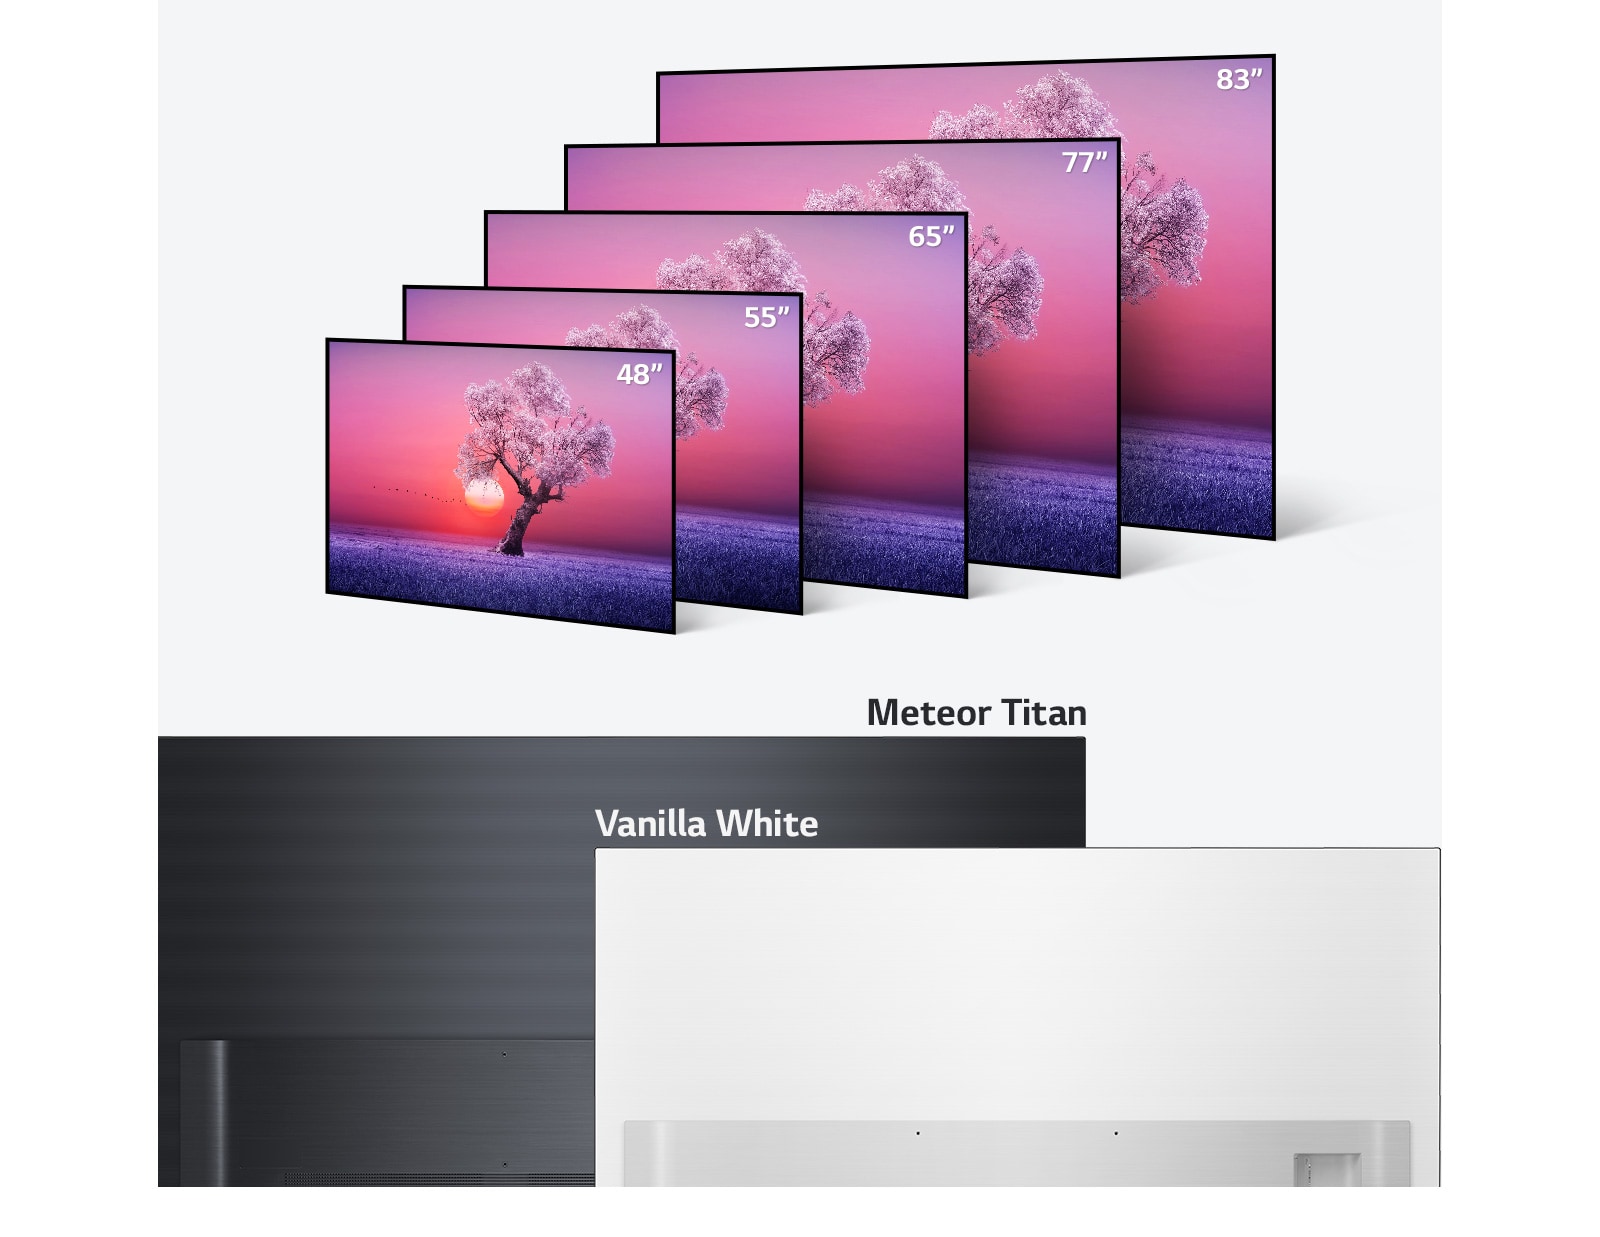 Η σειρά LG OLED TV σε διάφορα μεγέθη από 48 μέχρι 83 ίντσες, και χρωματισμούς από απαλό μαύρο μέχρι το λευκό της βανίλιας.